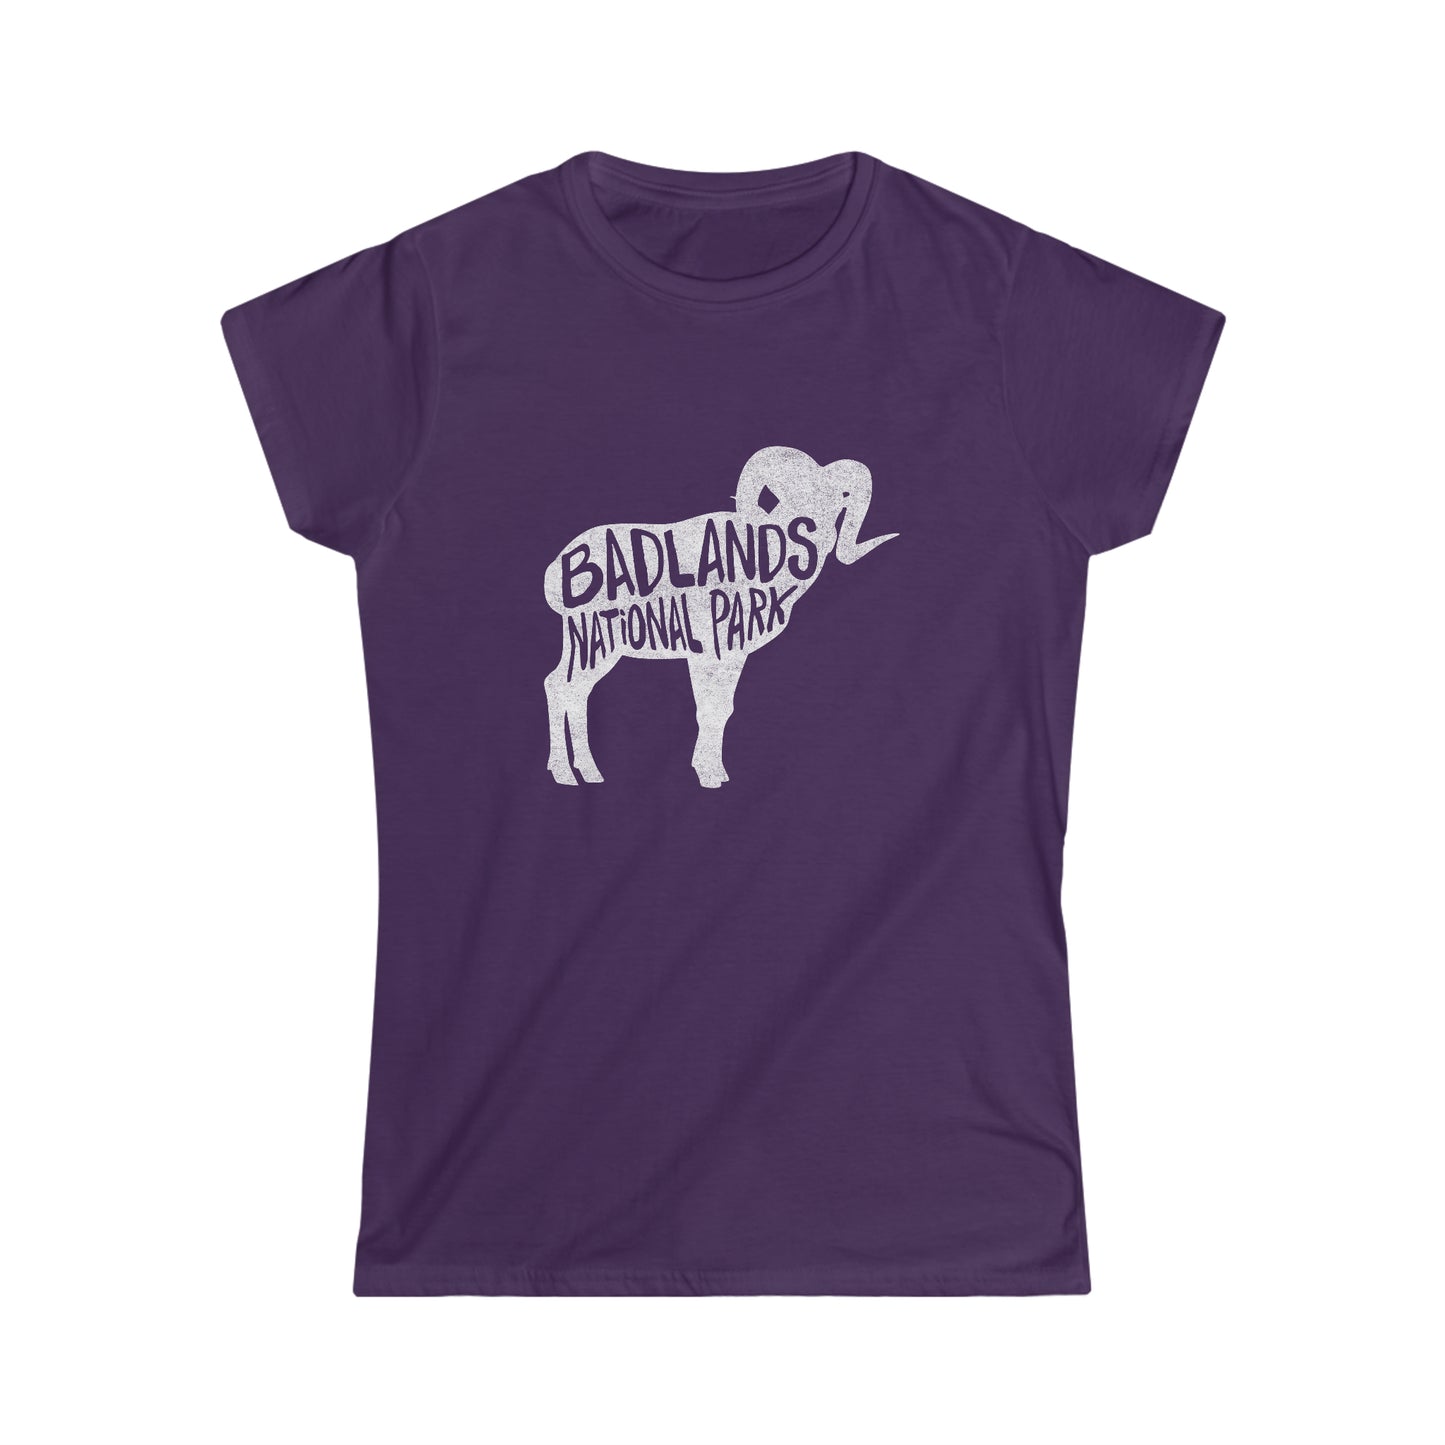 Badlands National Park Women's T-Shirt - Bighorn Sheep